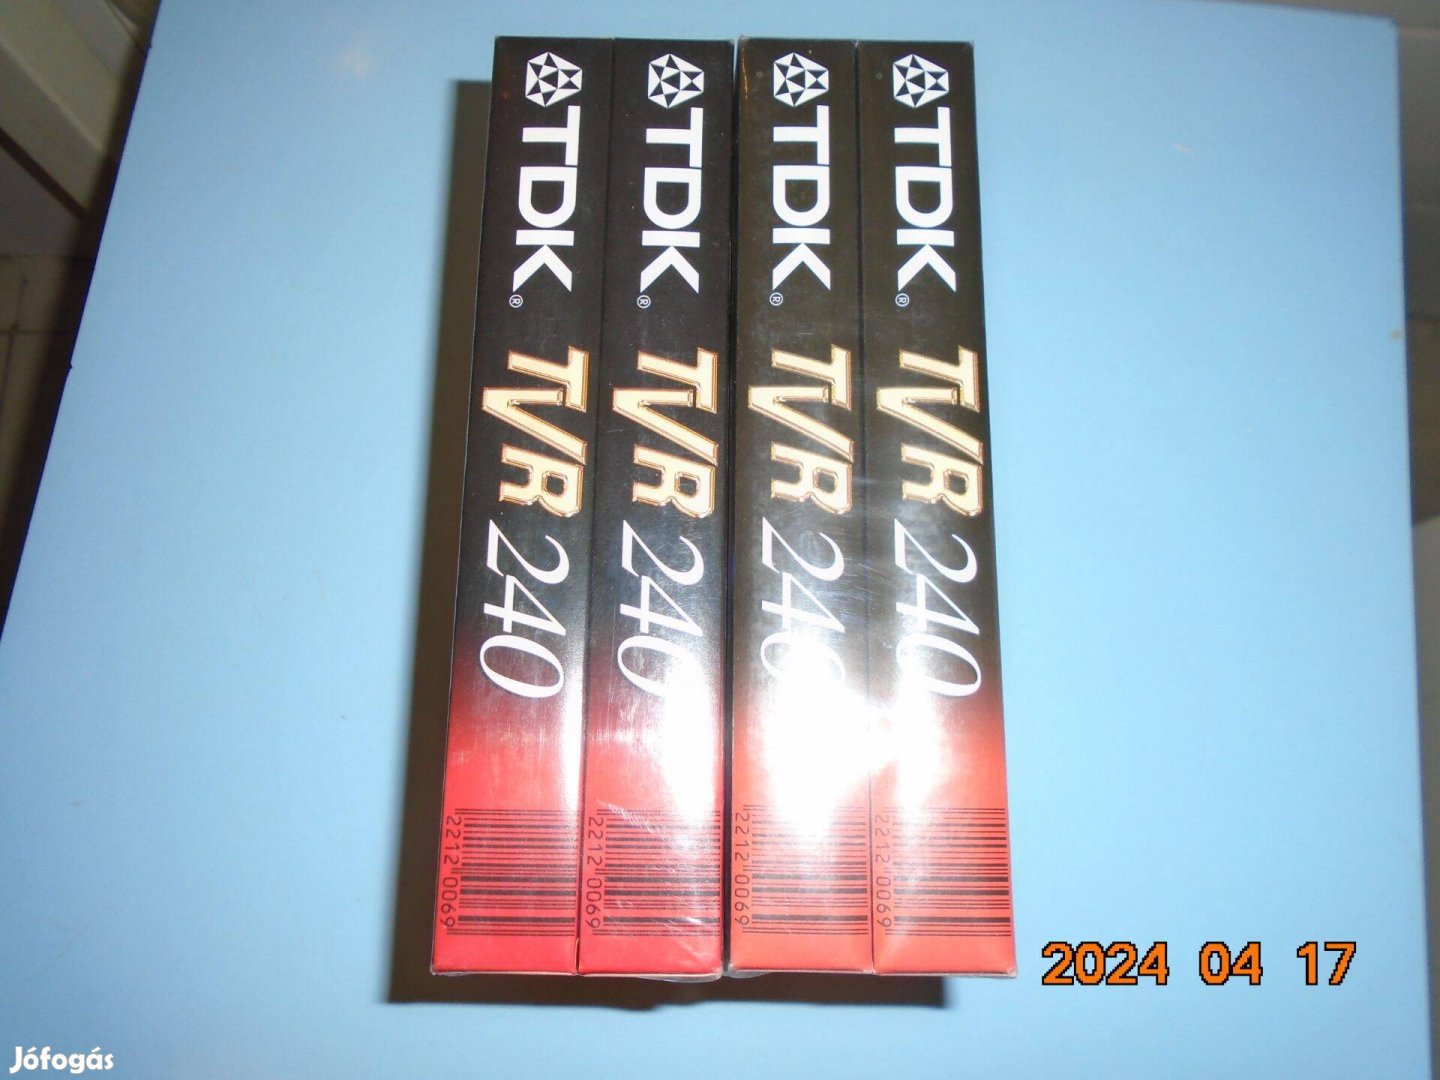 TDK TVR bontatlan új VHS kazetta 4 db. egyben